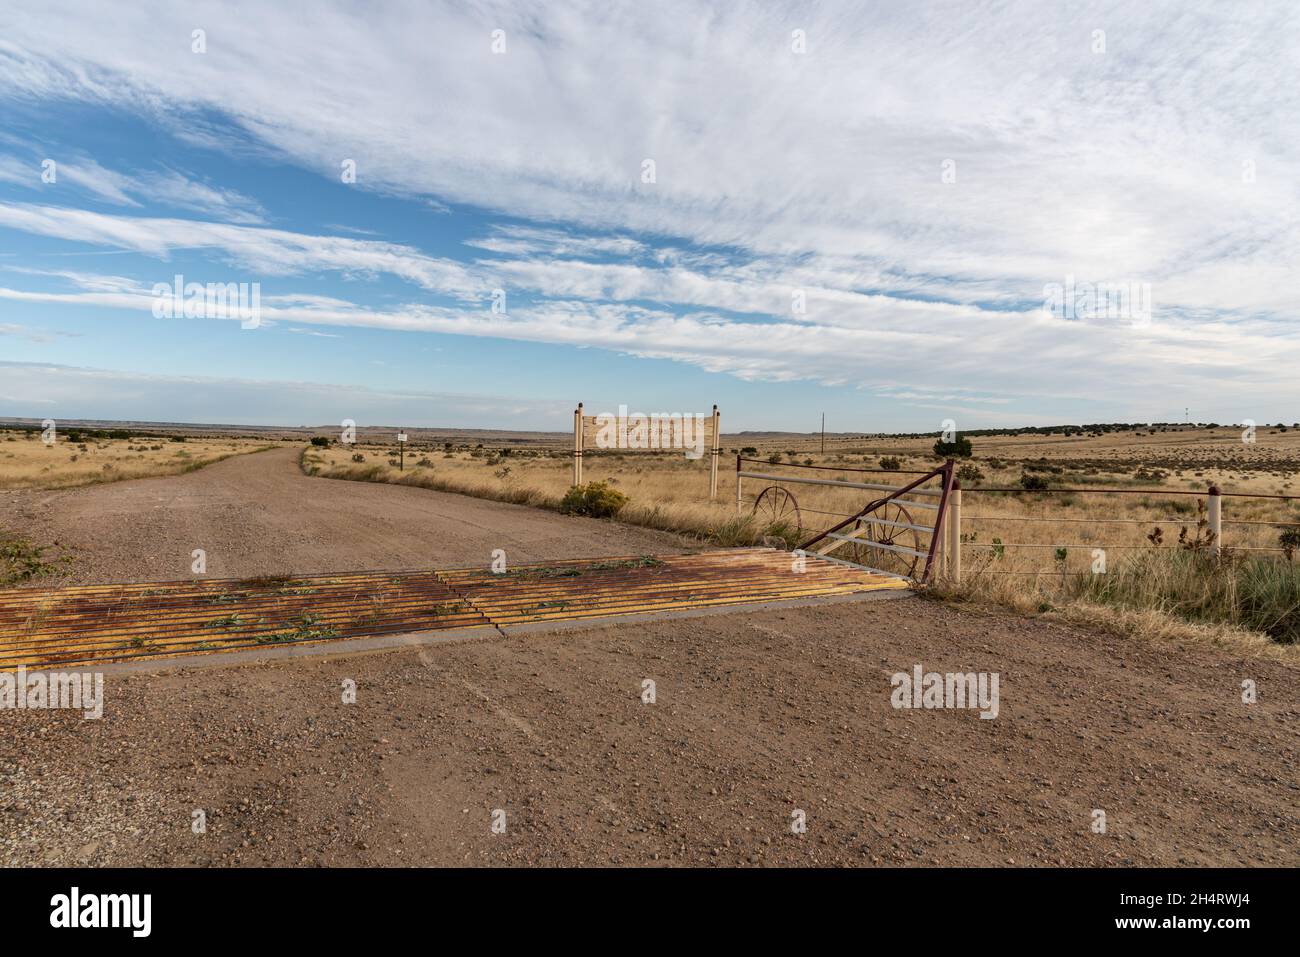 Prise de vue du Red Top Ranch dans les grandes plaines semi-arides du comté de Pueblo, Colorado, garde de bétail à l'entrée. Banque D'Images